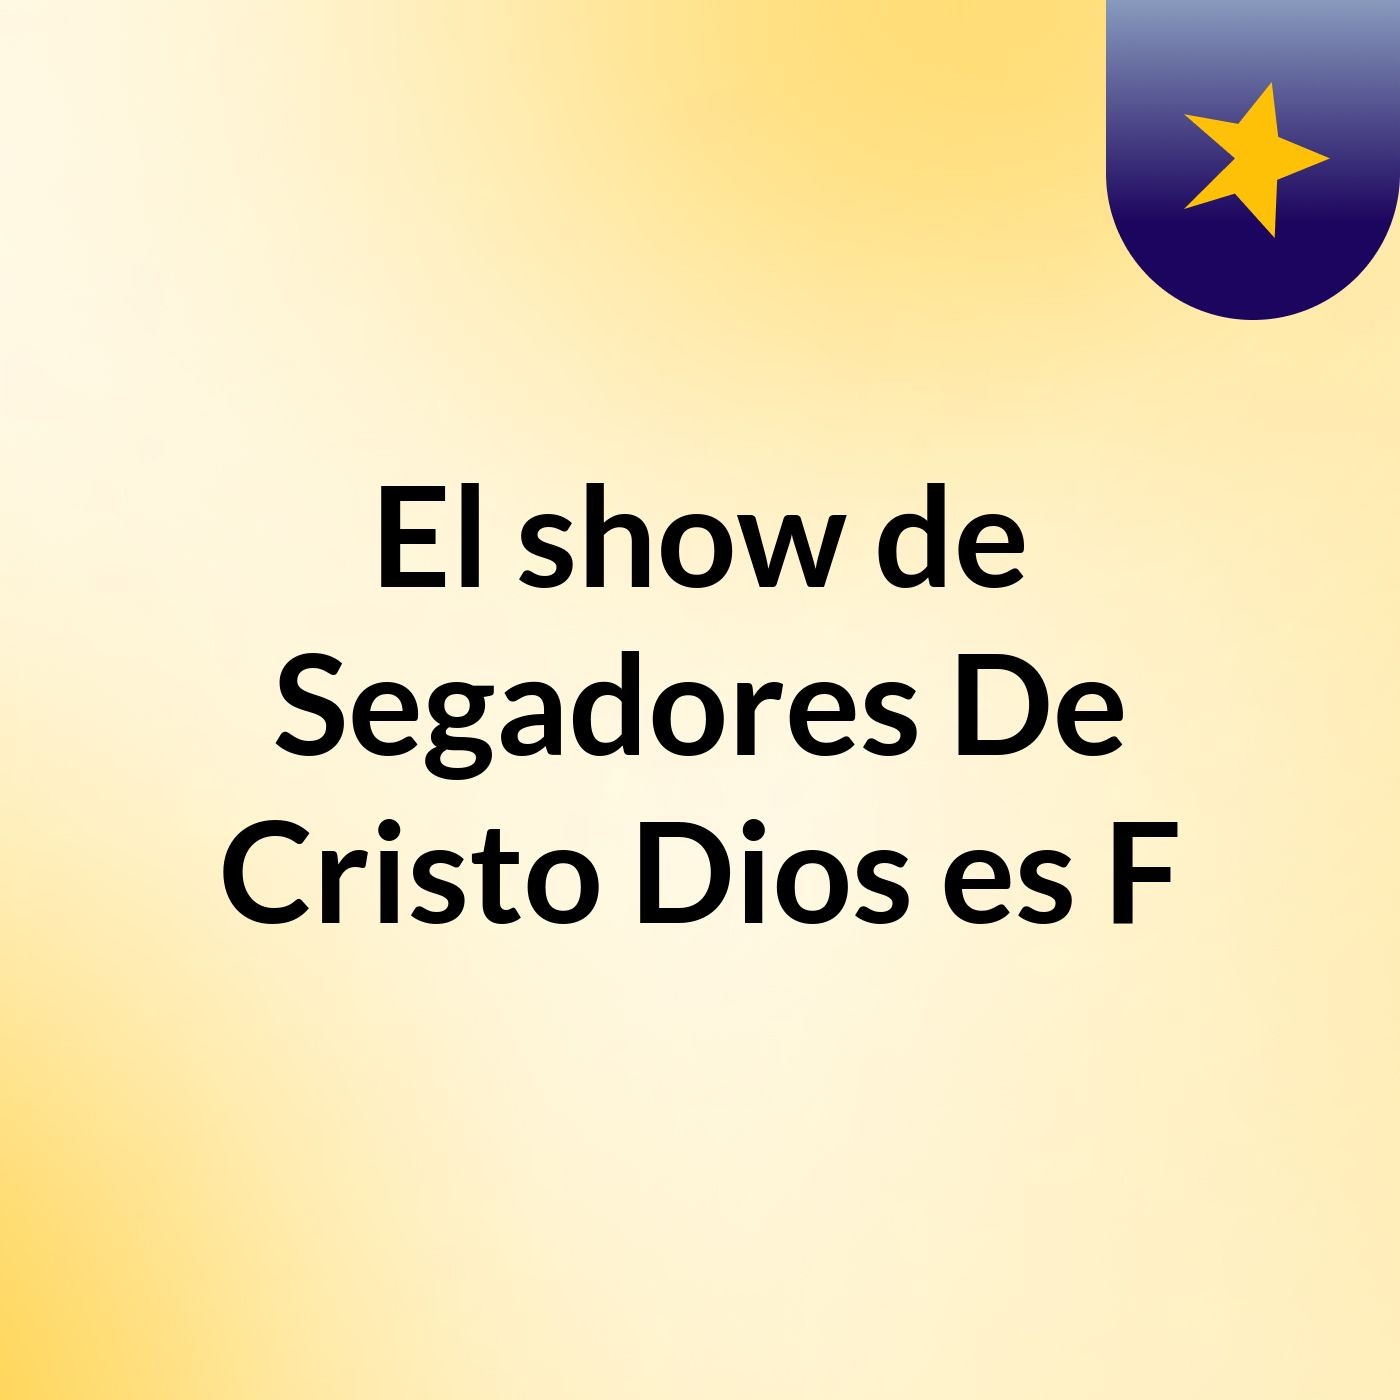 Episodio 2 - El show de Segadores De Cristo Dios es F